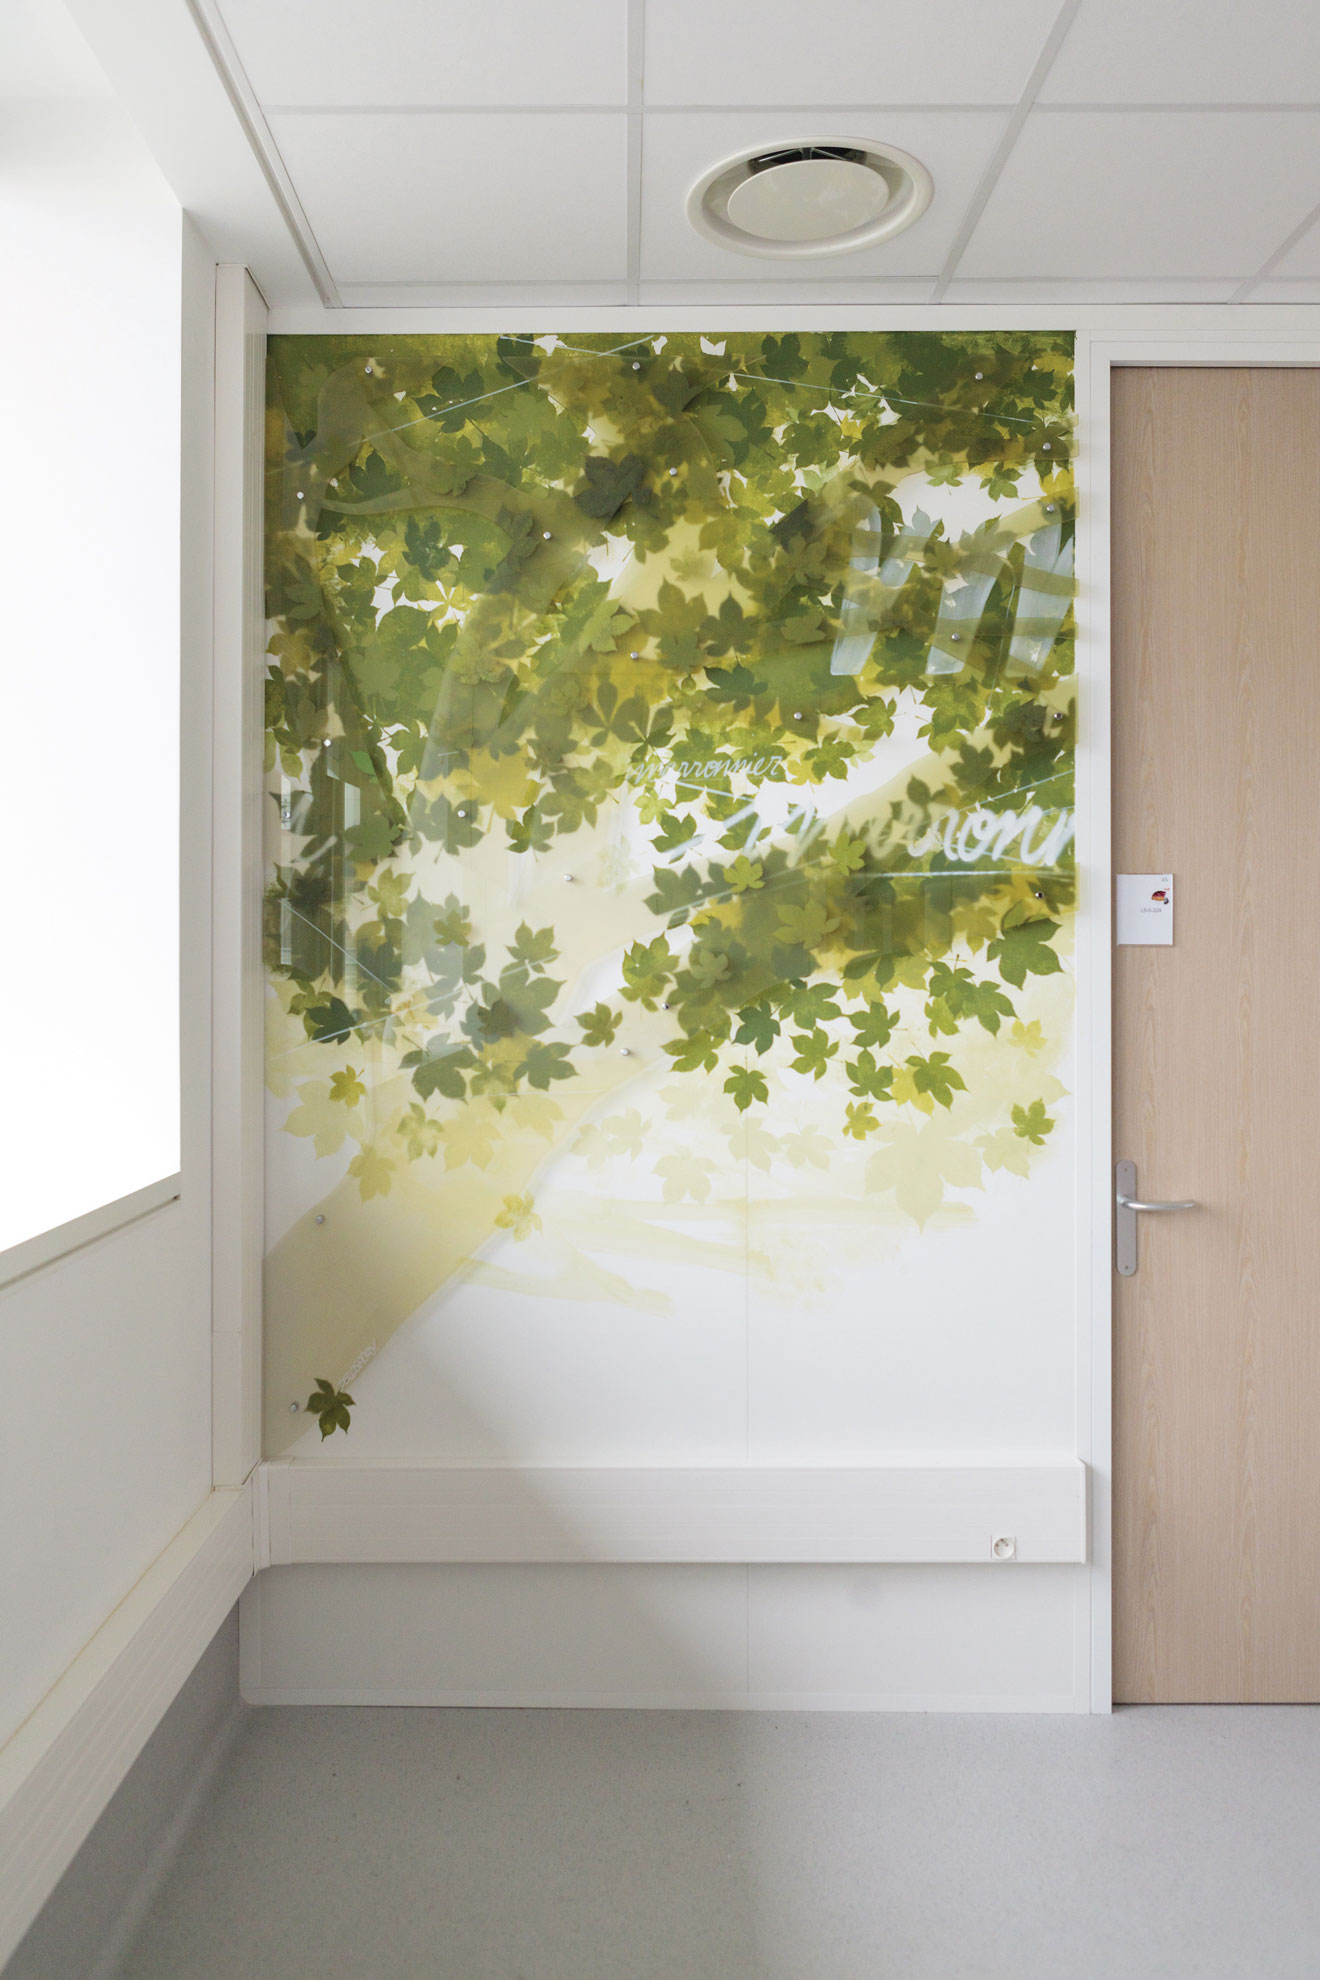 Décor végétal l'oreal france paris decoration peinture arbre cerisier salle d'attente graphisme habillage interieur